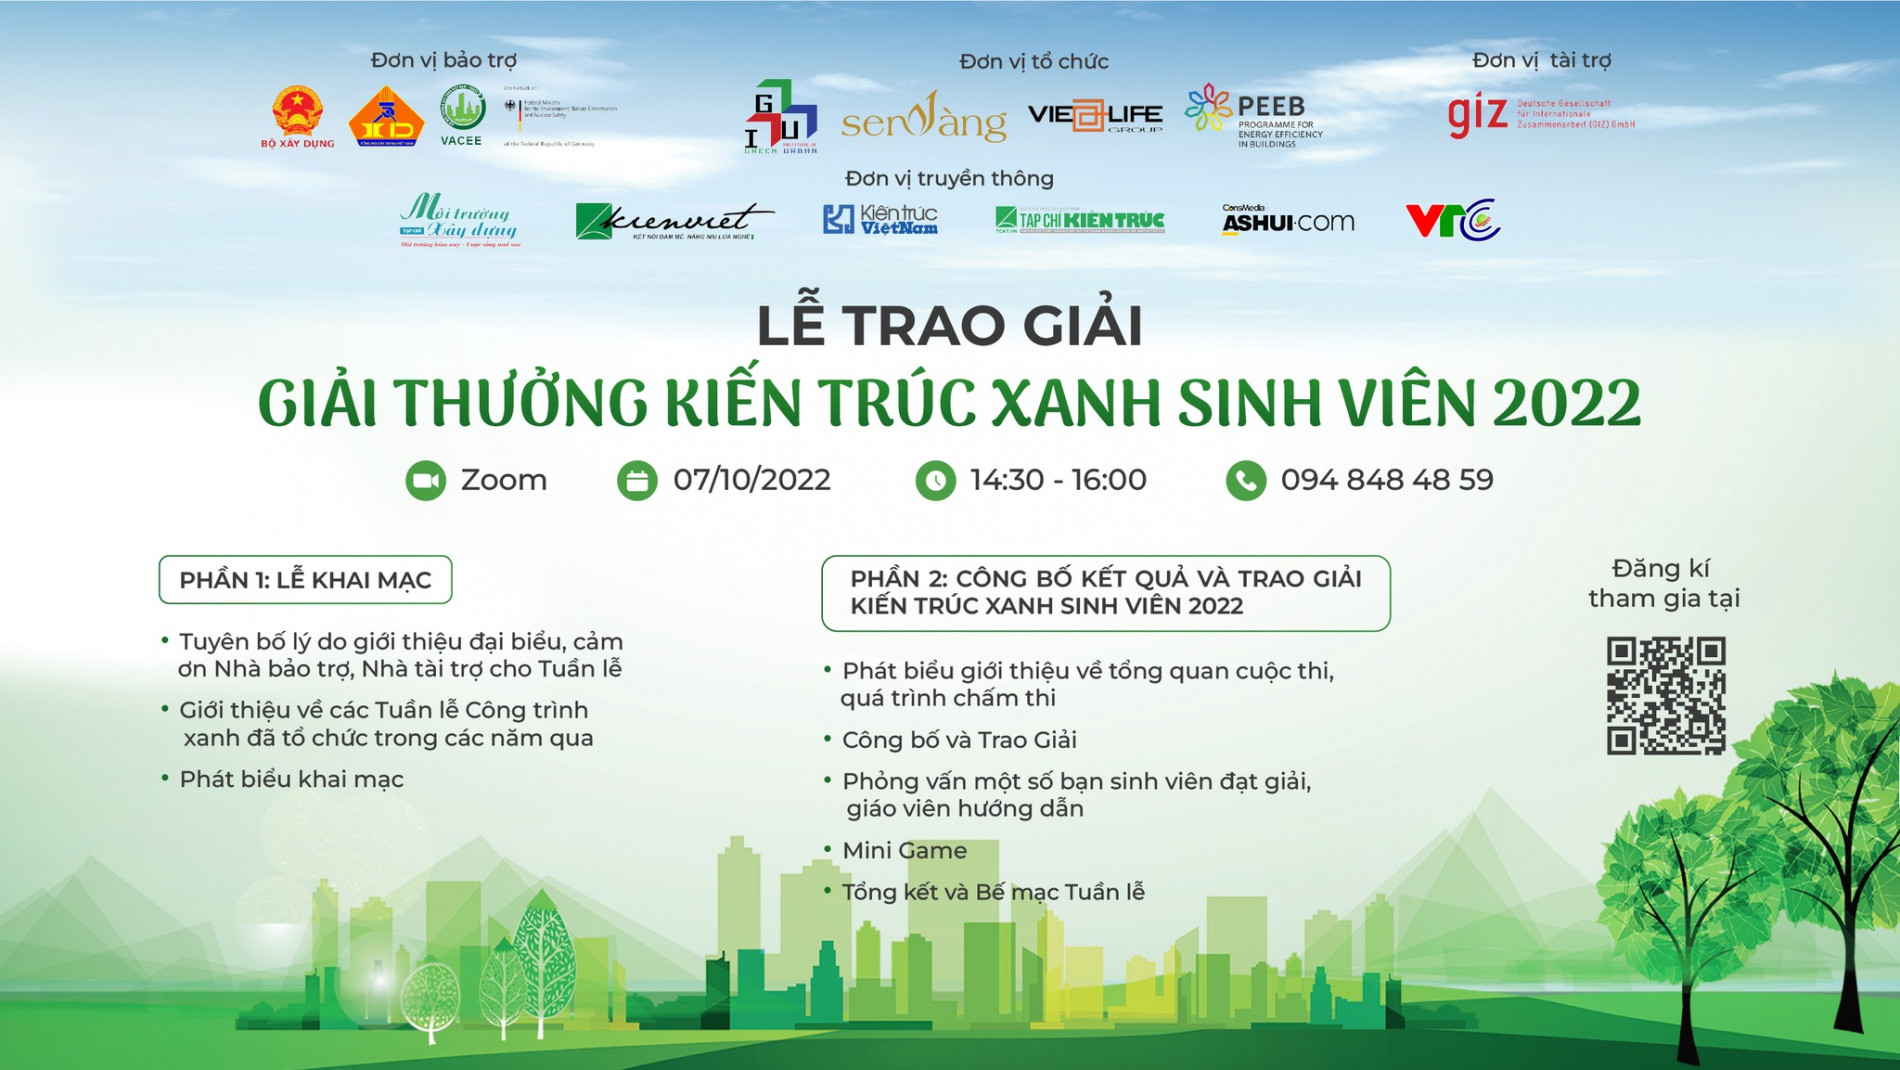 Giải thưởng “Kiến trúc xanh sinh viên 2022” | Tạp chí Kiến trúc Việt Nam